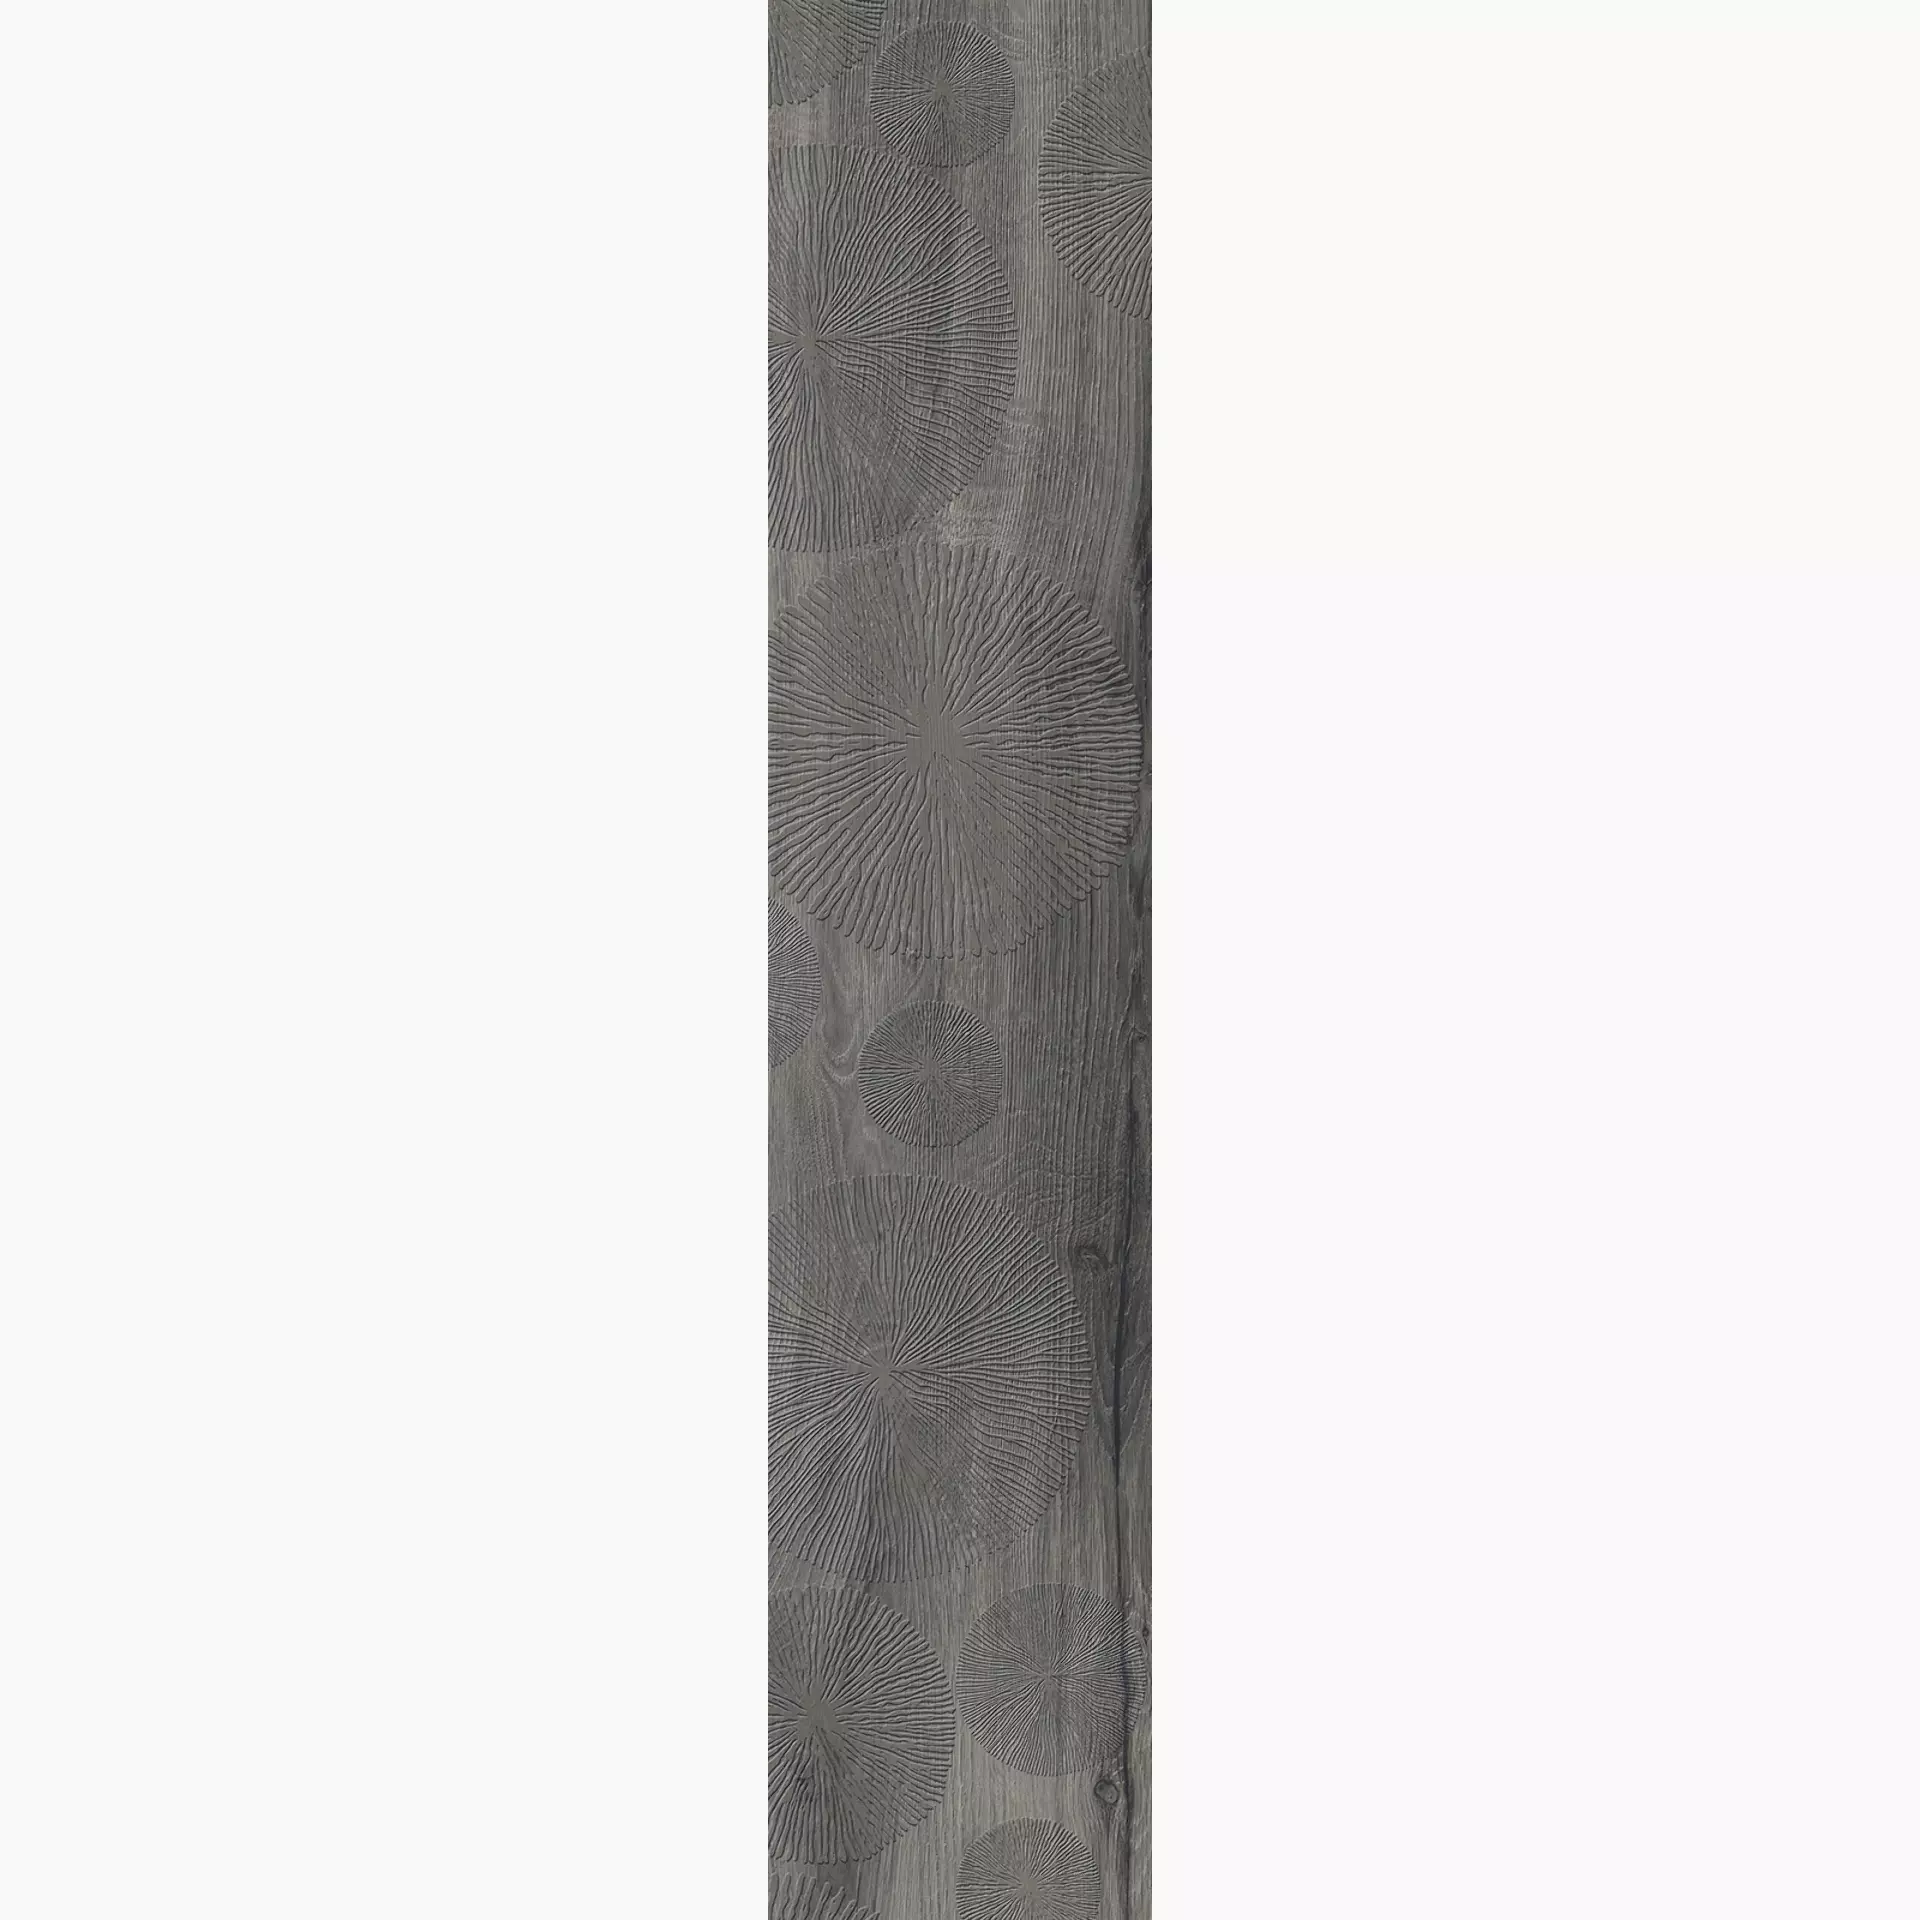 Rondine Daring Dark Naturale Decor Infinity J88953 24x120cm 9,5mm